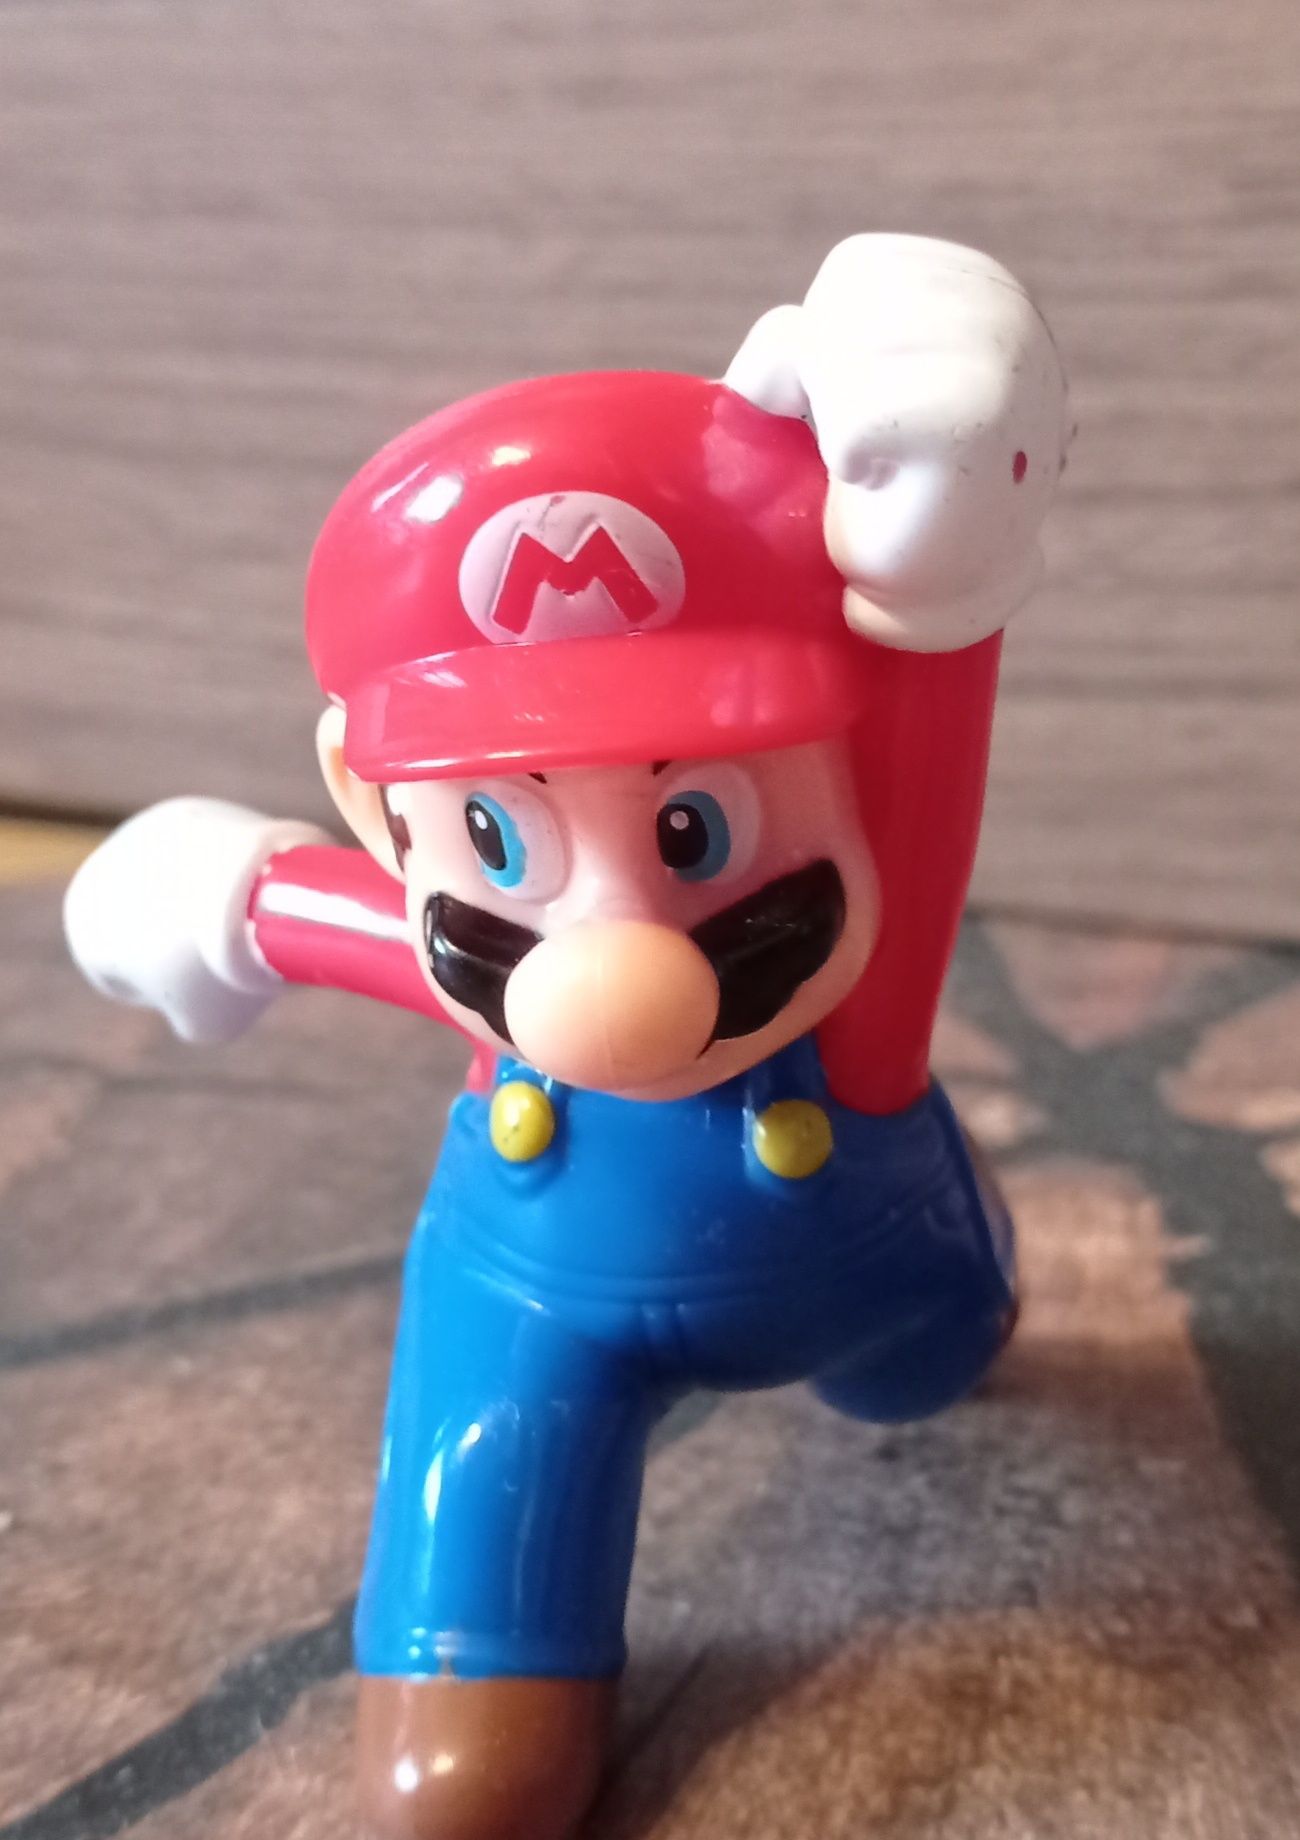 Nintendo McDonald's Super Mario Bros figurka kolekcjonerska 2015 r.